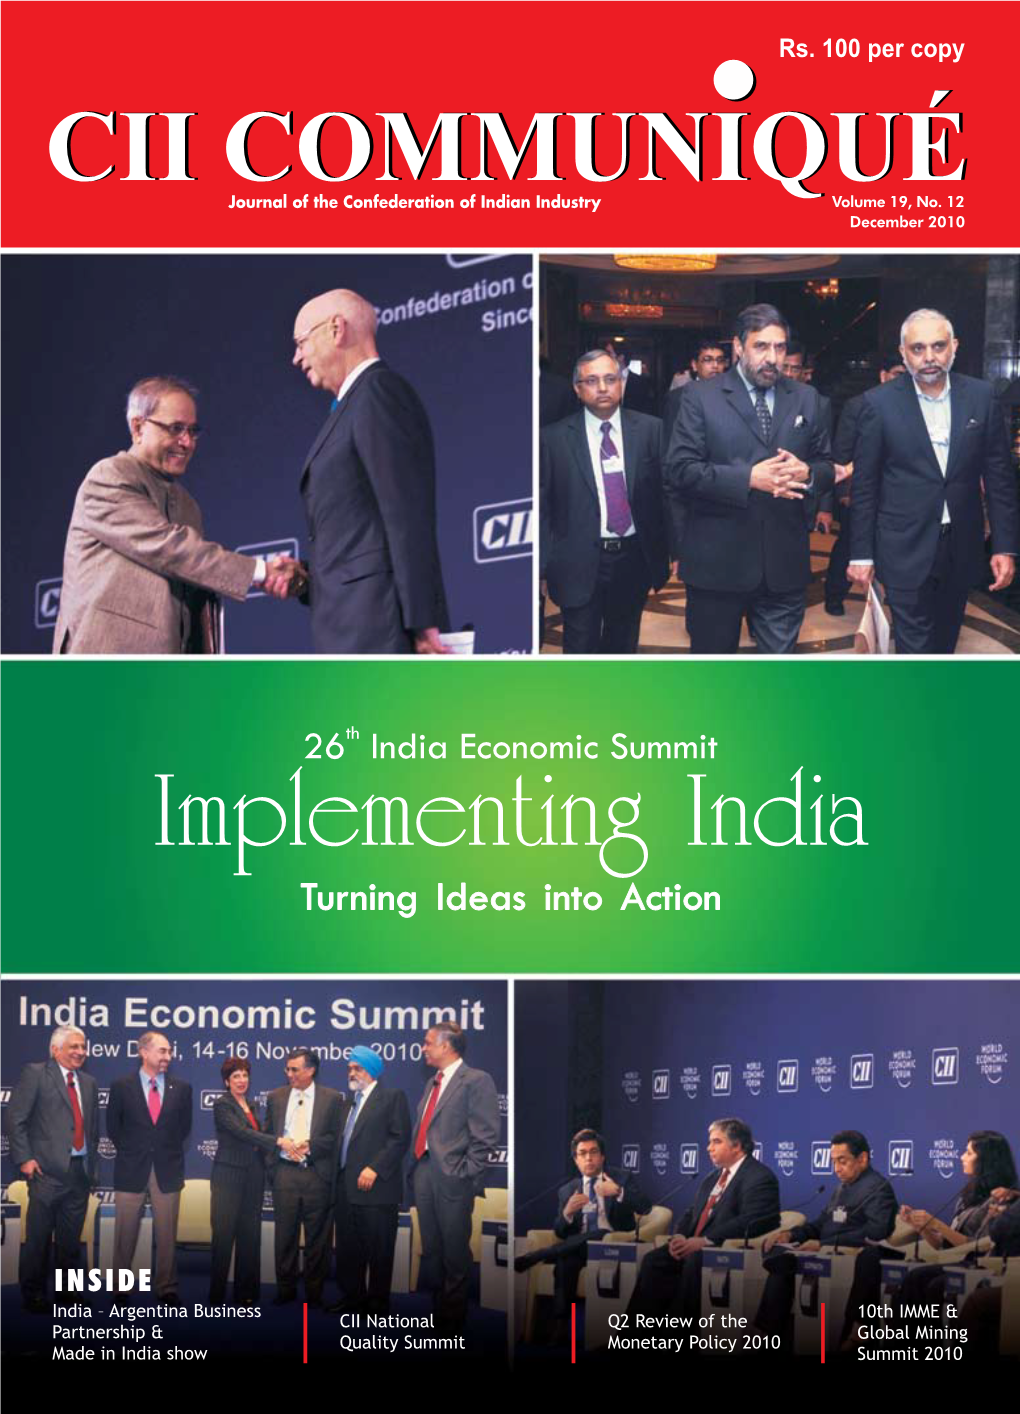 CII National Quality Summit